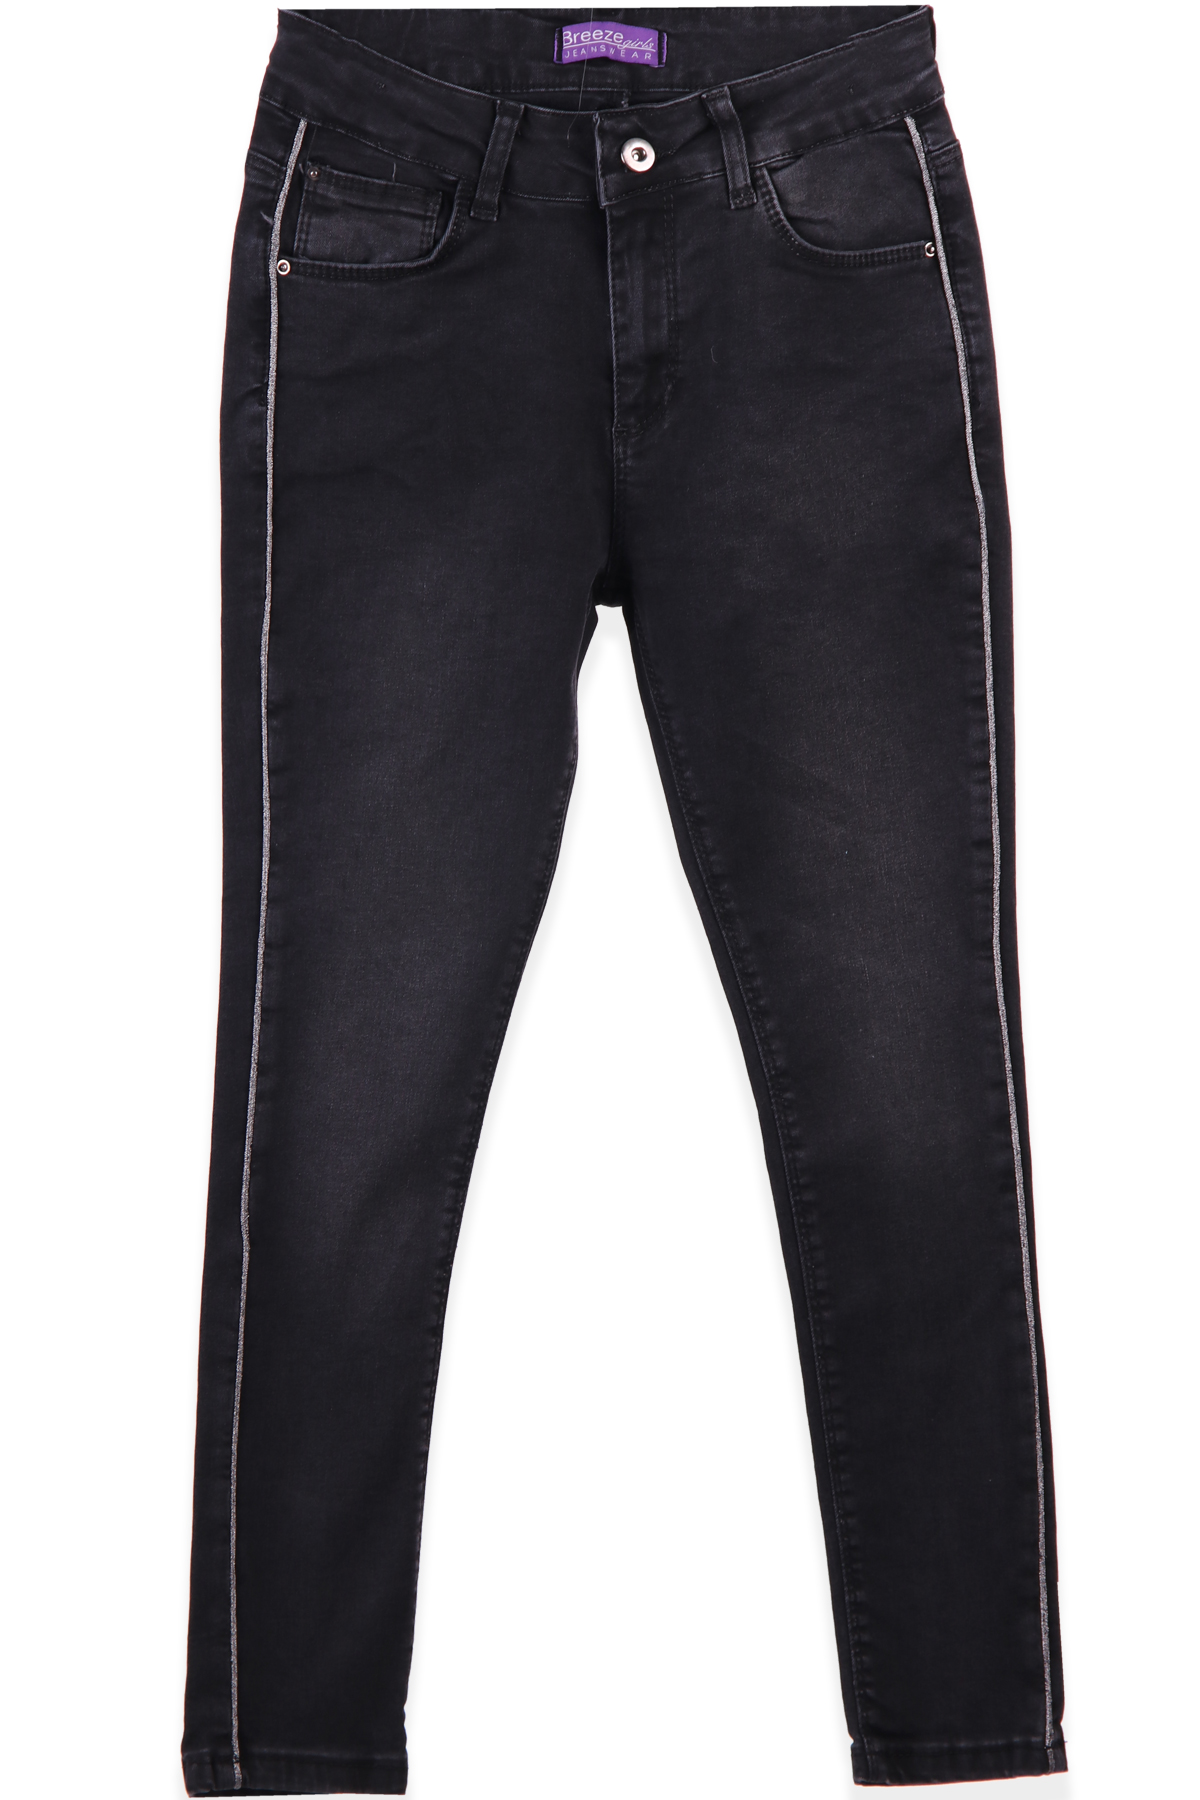 termal Teleferik Misilleme  Kız Çocuk Pantolon - Kot Şeritli Siyah 8-14 Yaş | Breeze